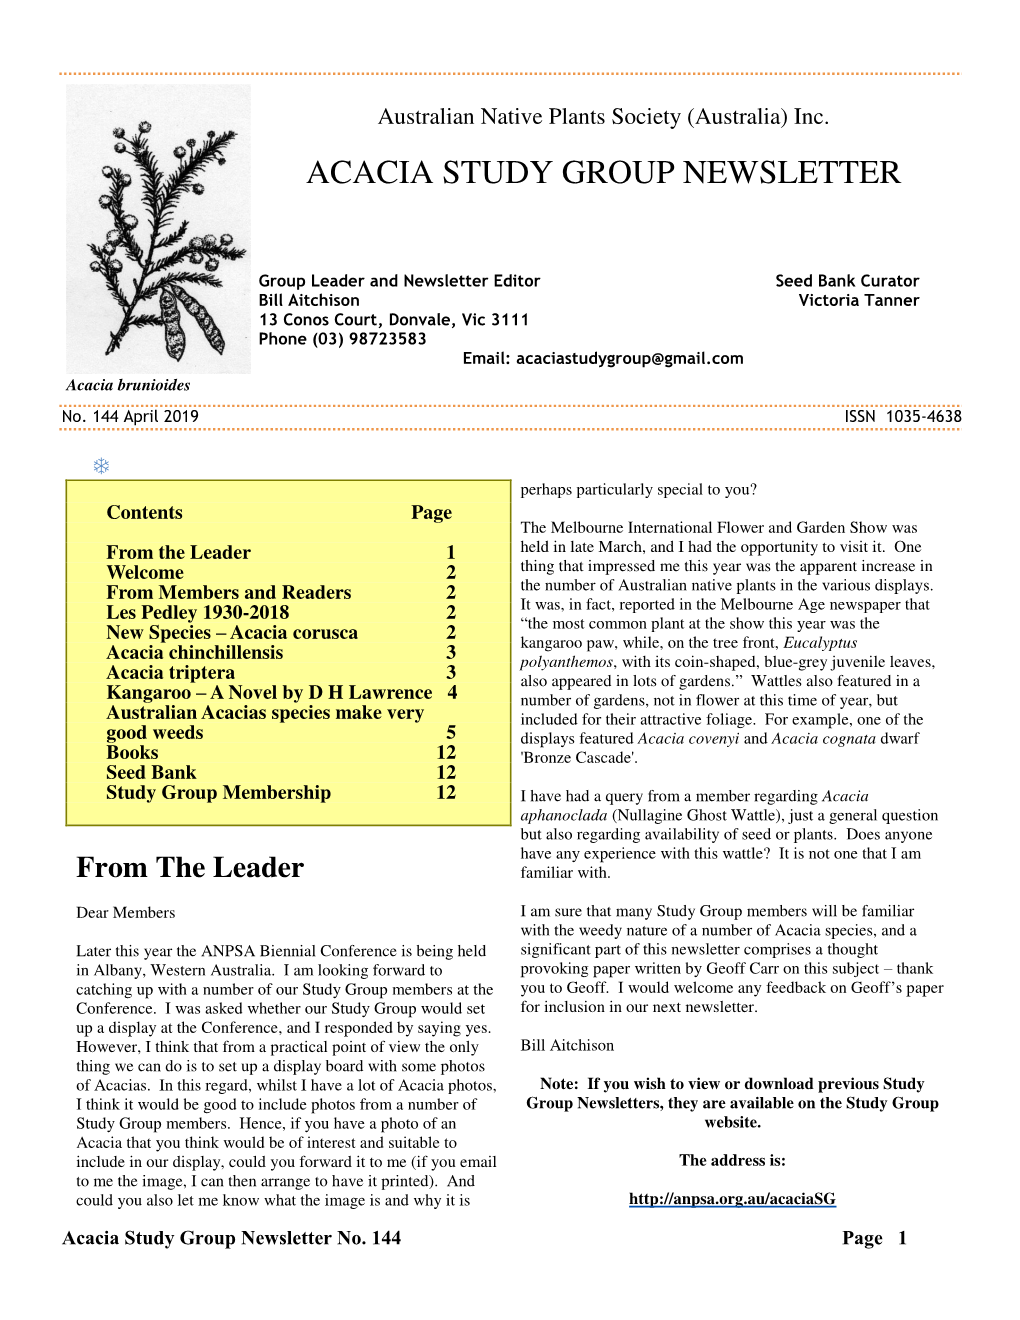 Acacia Corusca